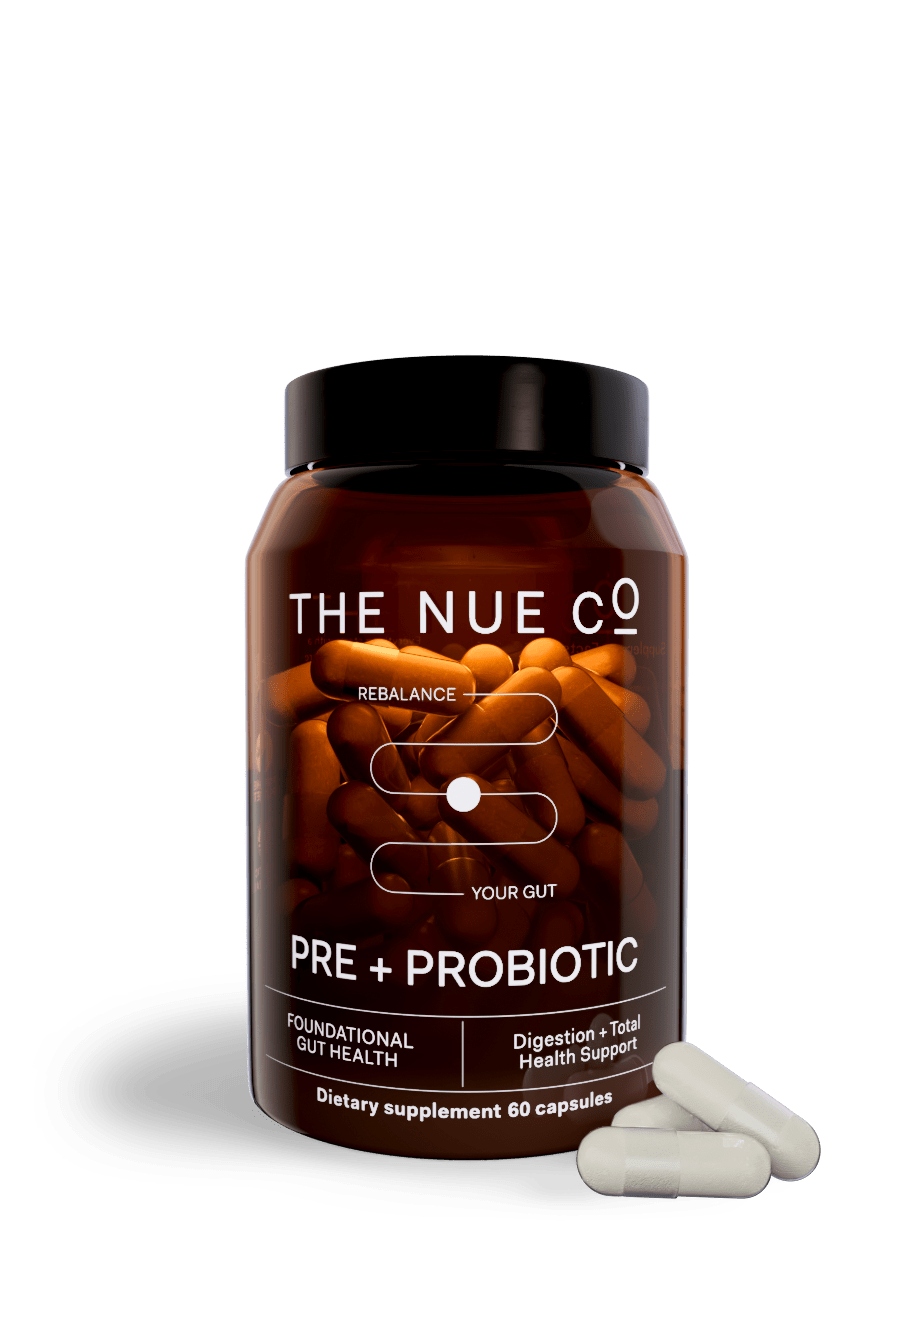 PREBIOTIC + PROBIOTIC single The Nue Co. 